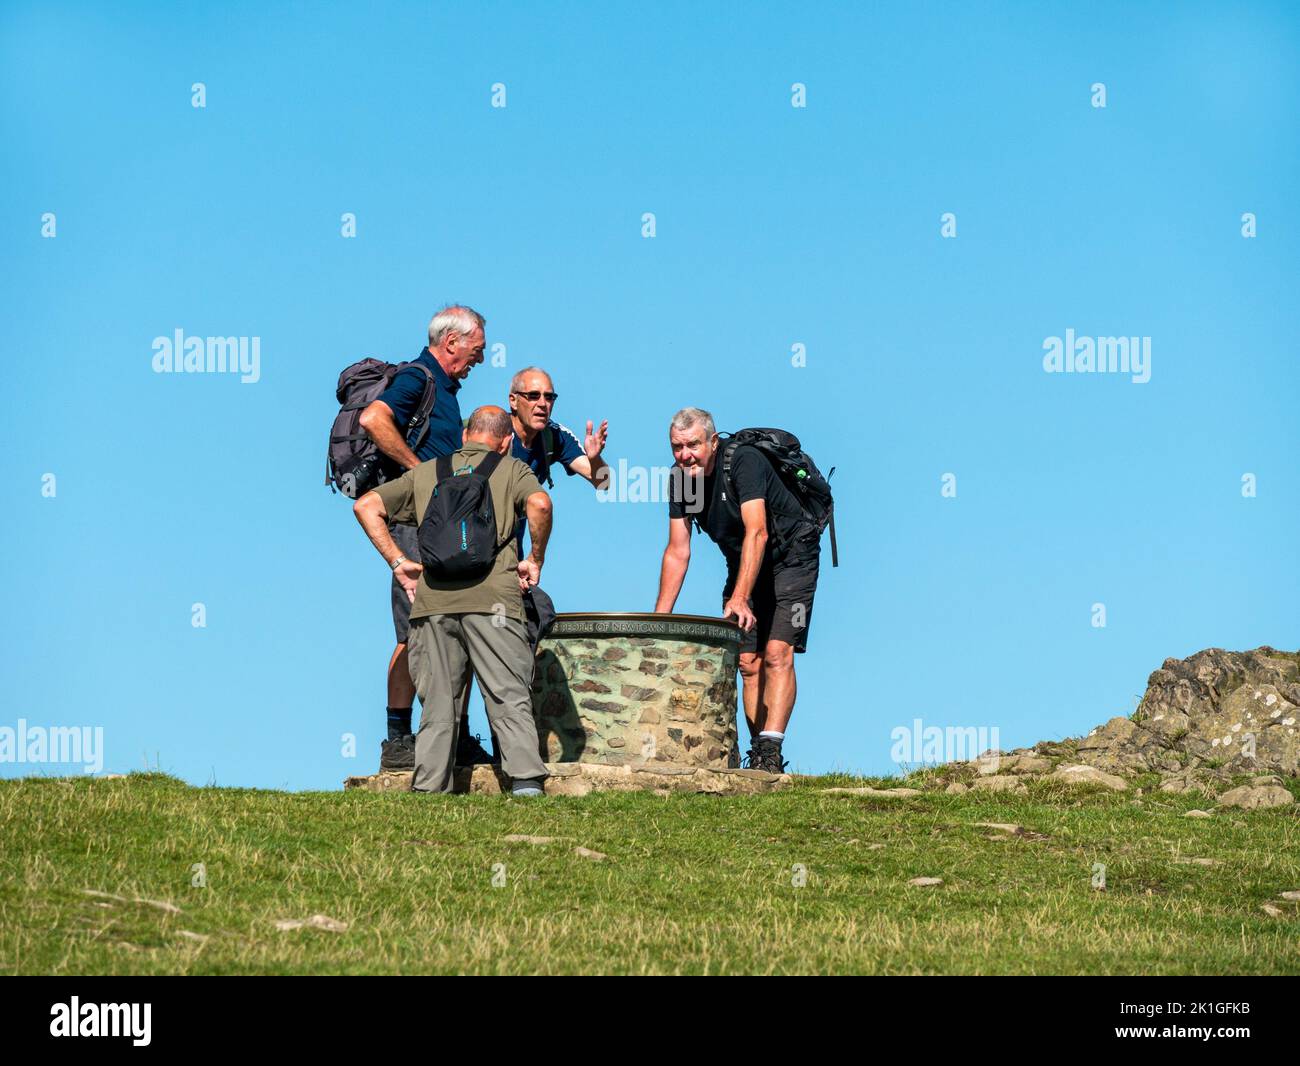 Gruppe von erwachsenen männlichen Wanderern / Spaziergängern in Shorts & Wanderstiefeln mit Rucksäcken, die Toposkop, Bradgate Park Hill, Leicestershire, England, Großbritannien, betrachten Stockfoto